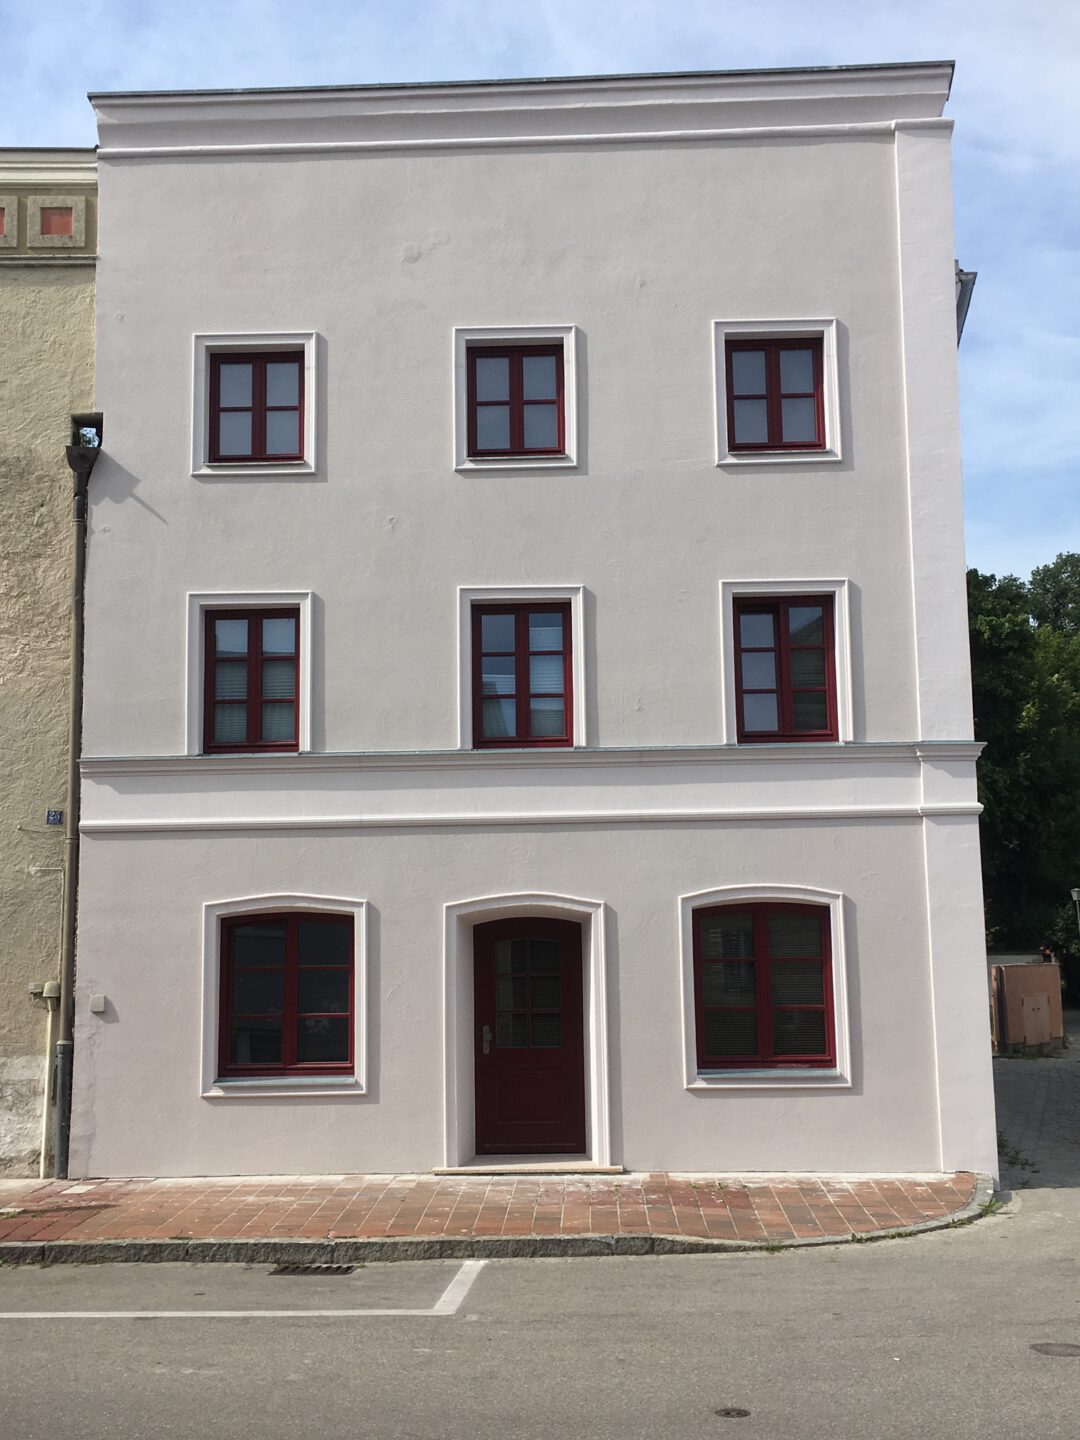 Arkaden- und Fassadenprogramm der Stadt Mühldorf